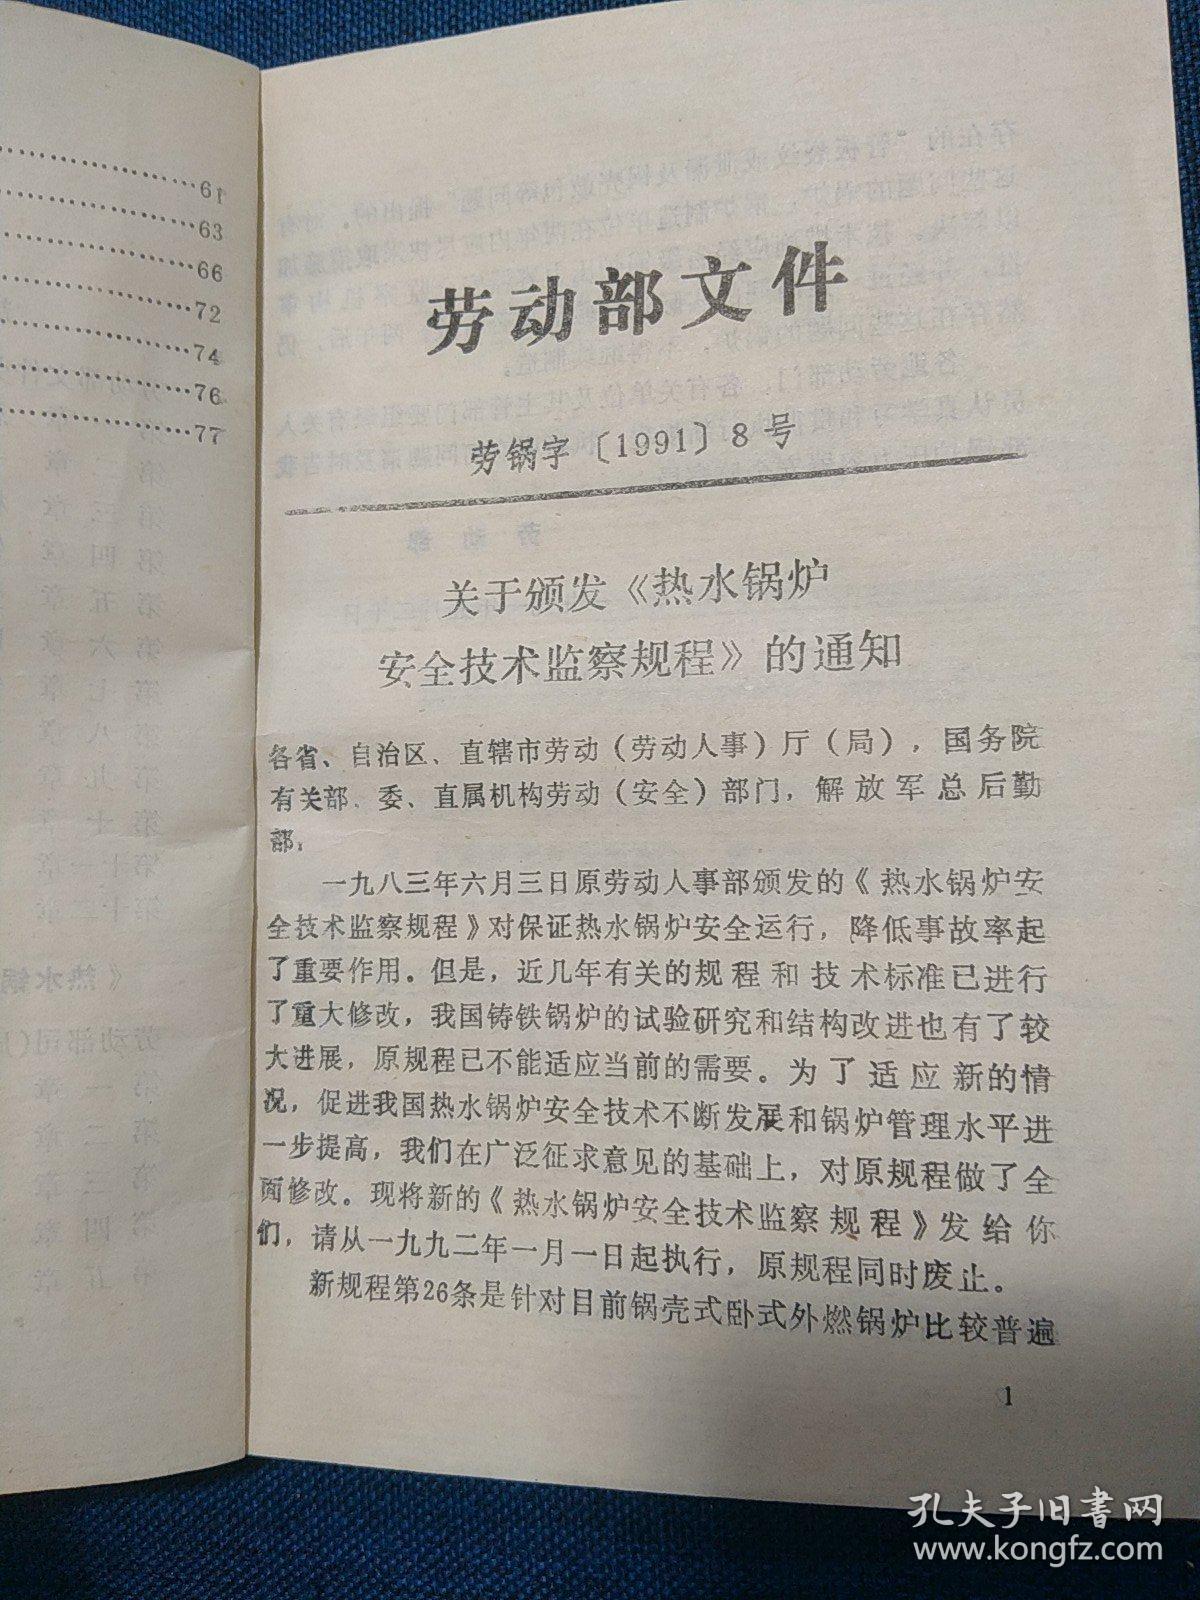 中华人民共和国劳动部
热水锅炉安全技术监察规程及其部分
条款说明